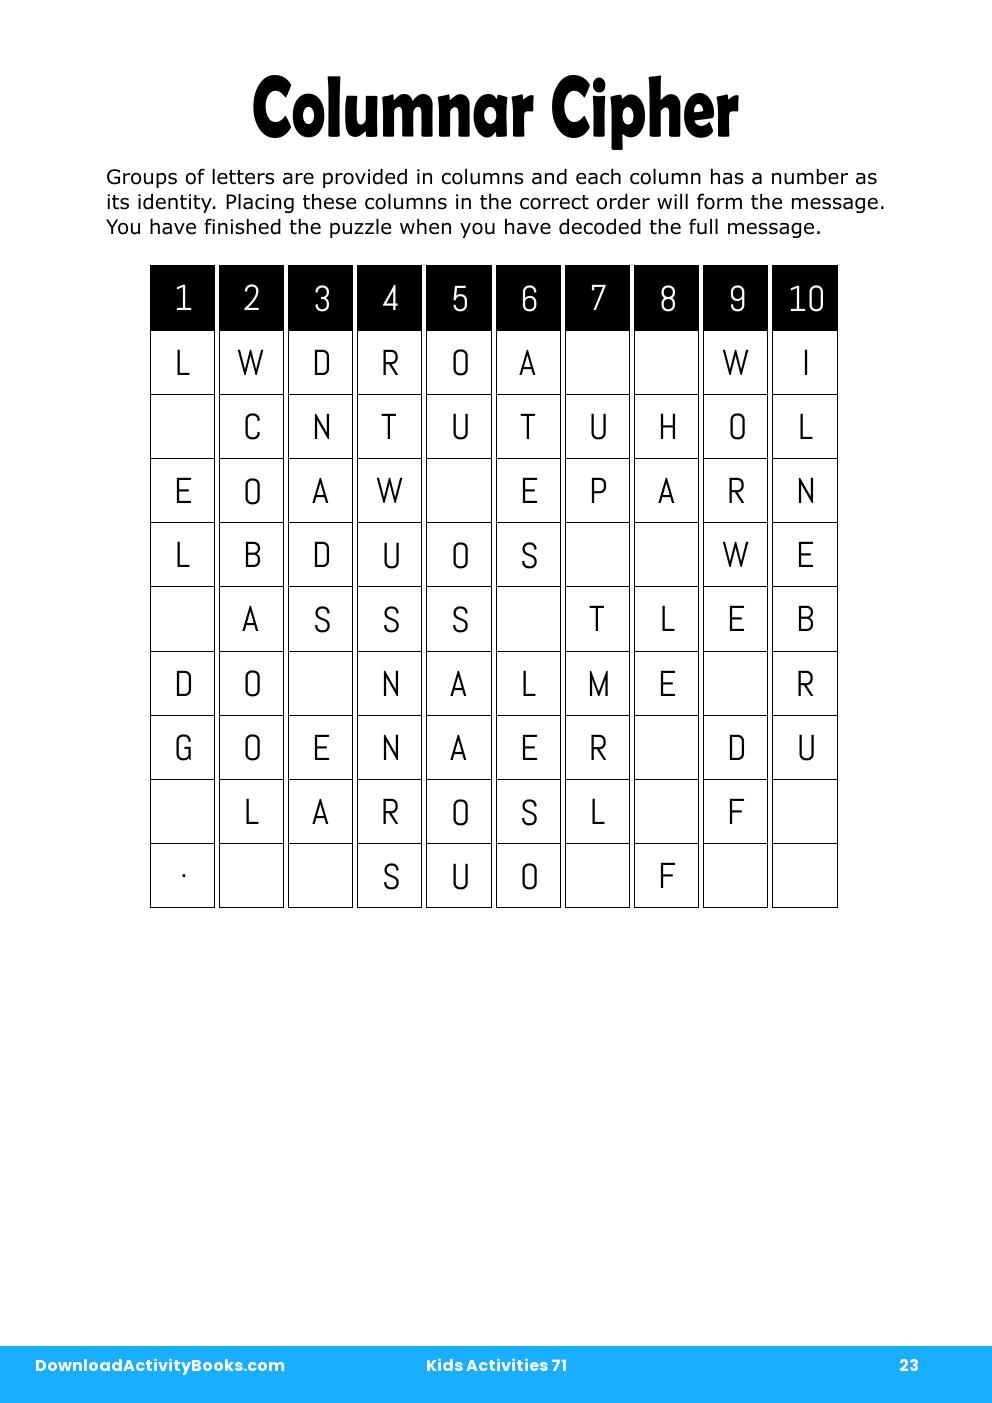 Columnar Cipher in Kids Activities 71